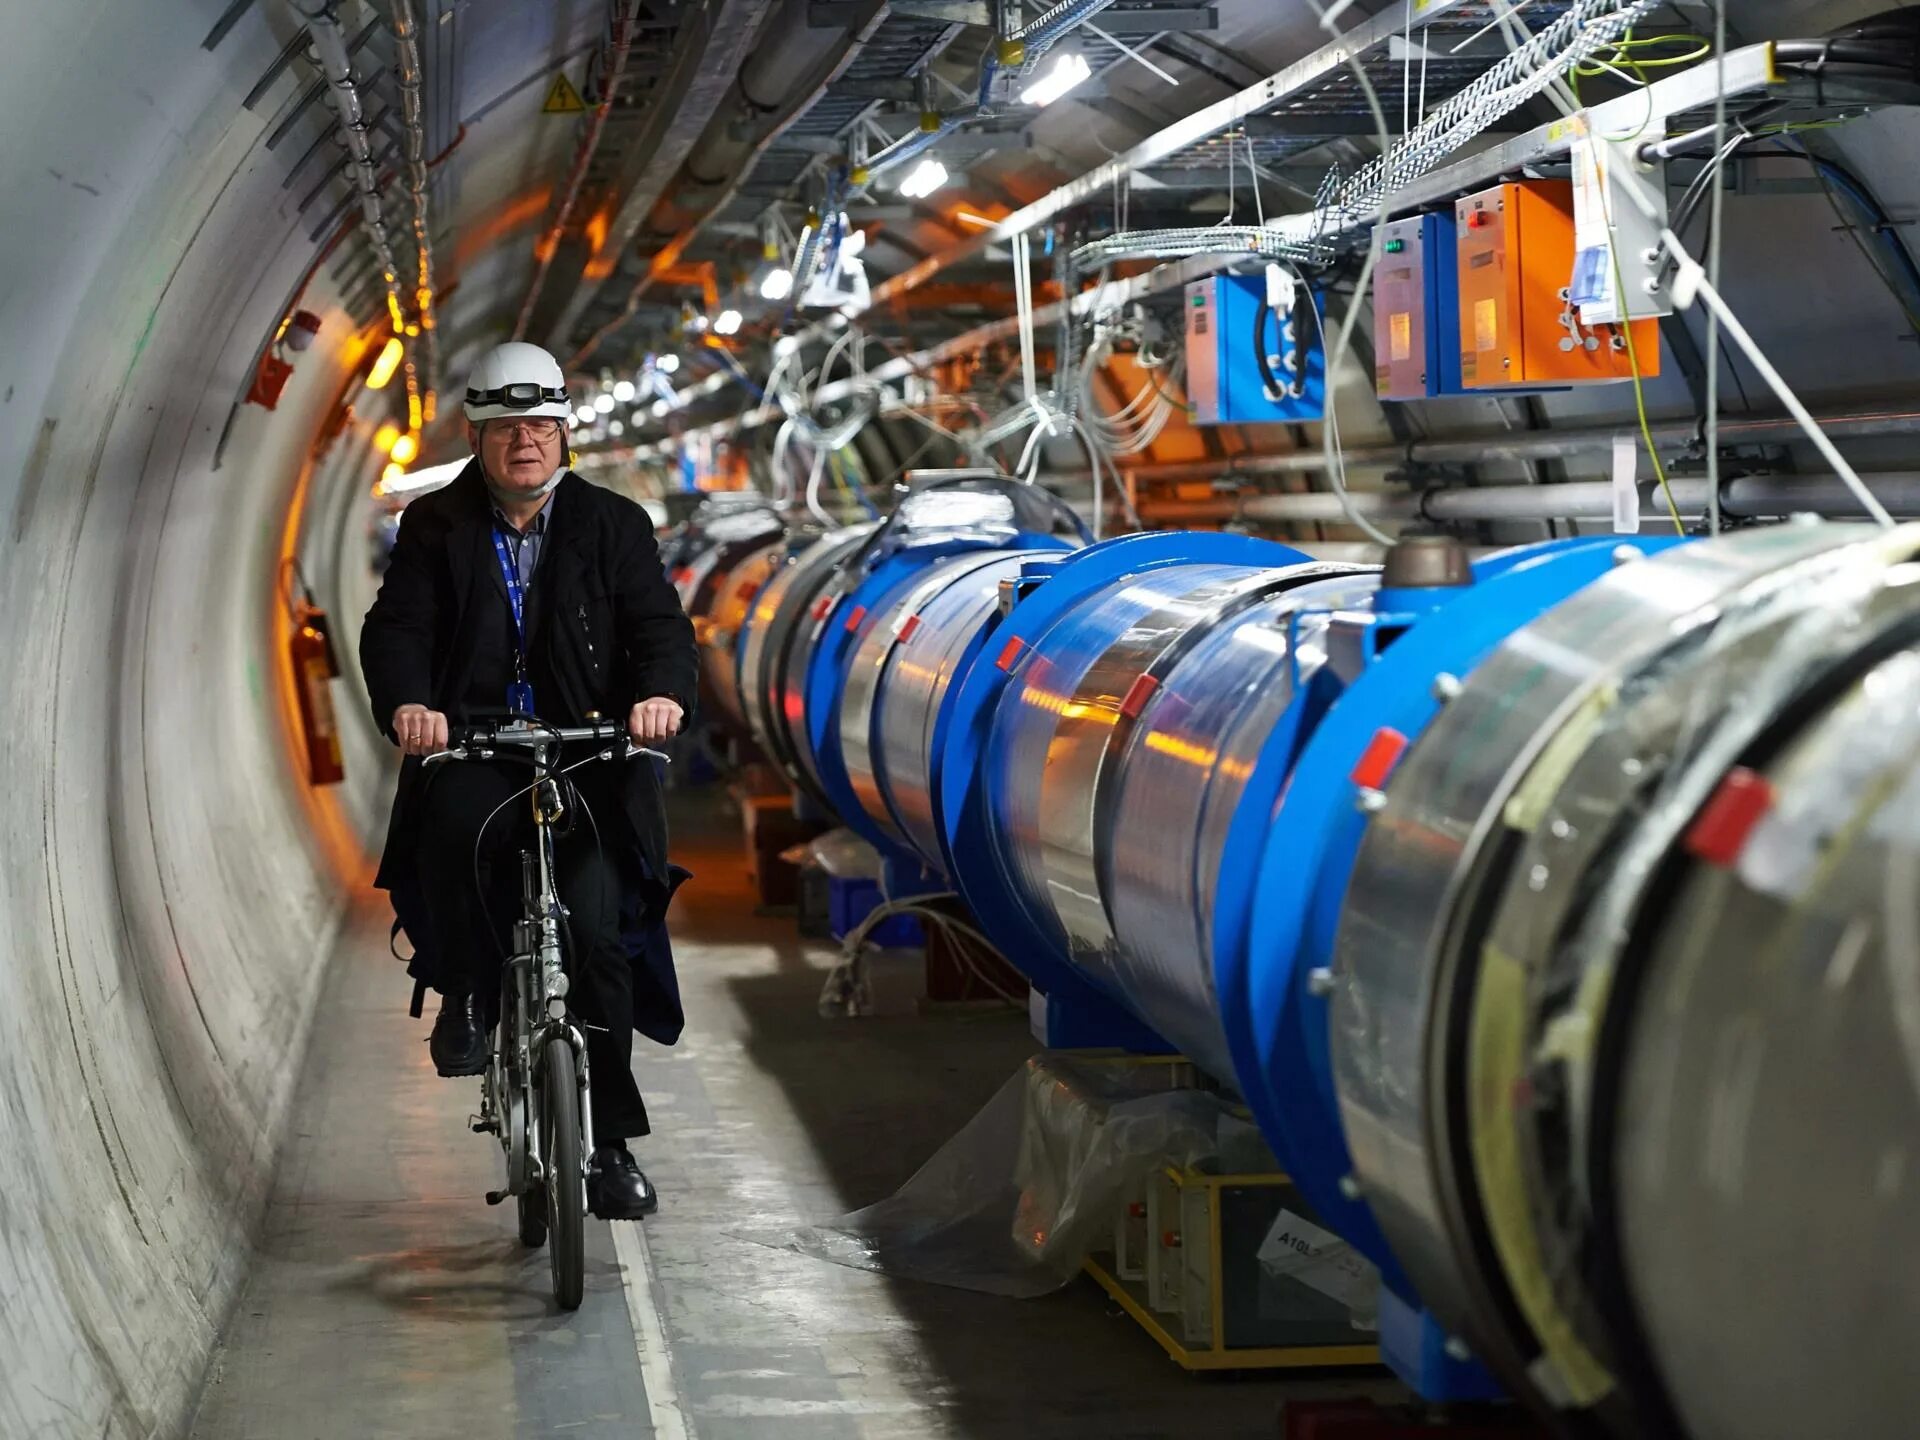 Адронный коллайдер ЦЕРН. Швейцария ЦЕРН коллайдер. Большой адронный коллайдер ЦЕРН. Большой адронный коллайдер в CERN. Андроидный коллайдер это